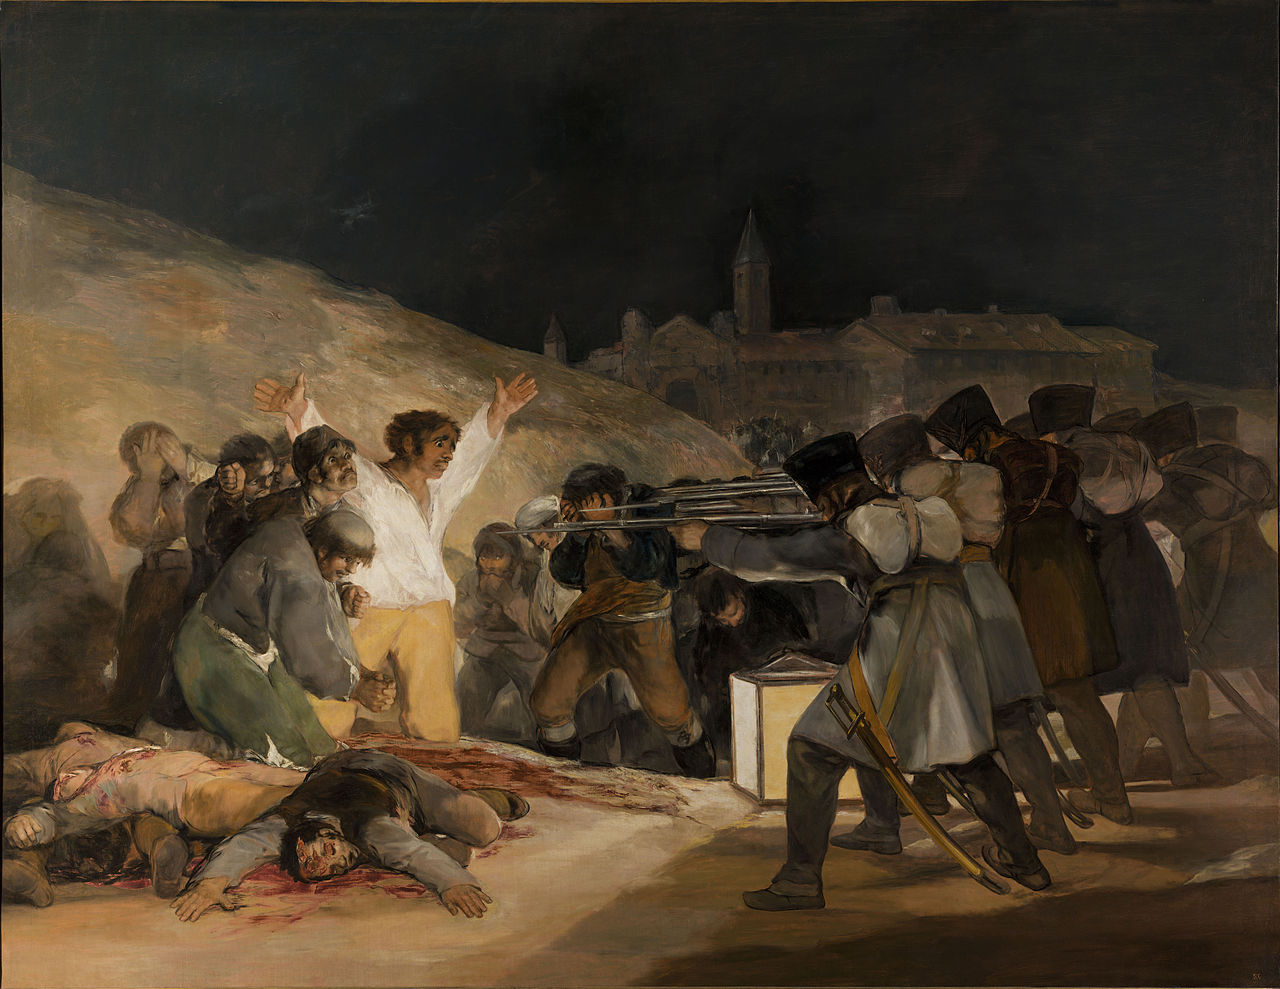 De derde van mei 1808 by Francisco Goya - 1814 - 268 × 347 cm 